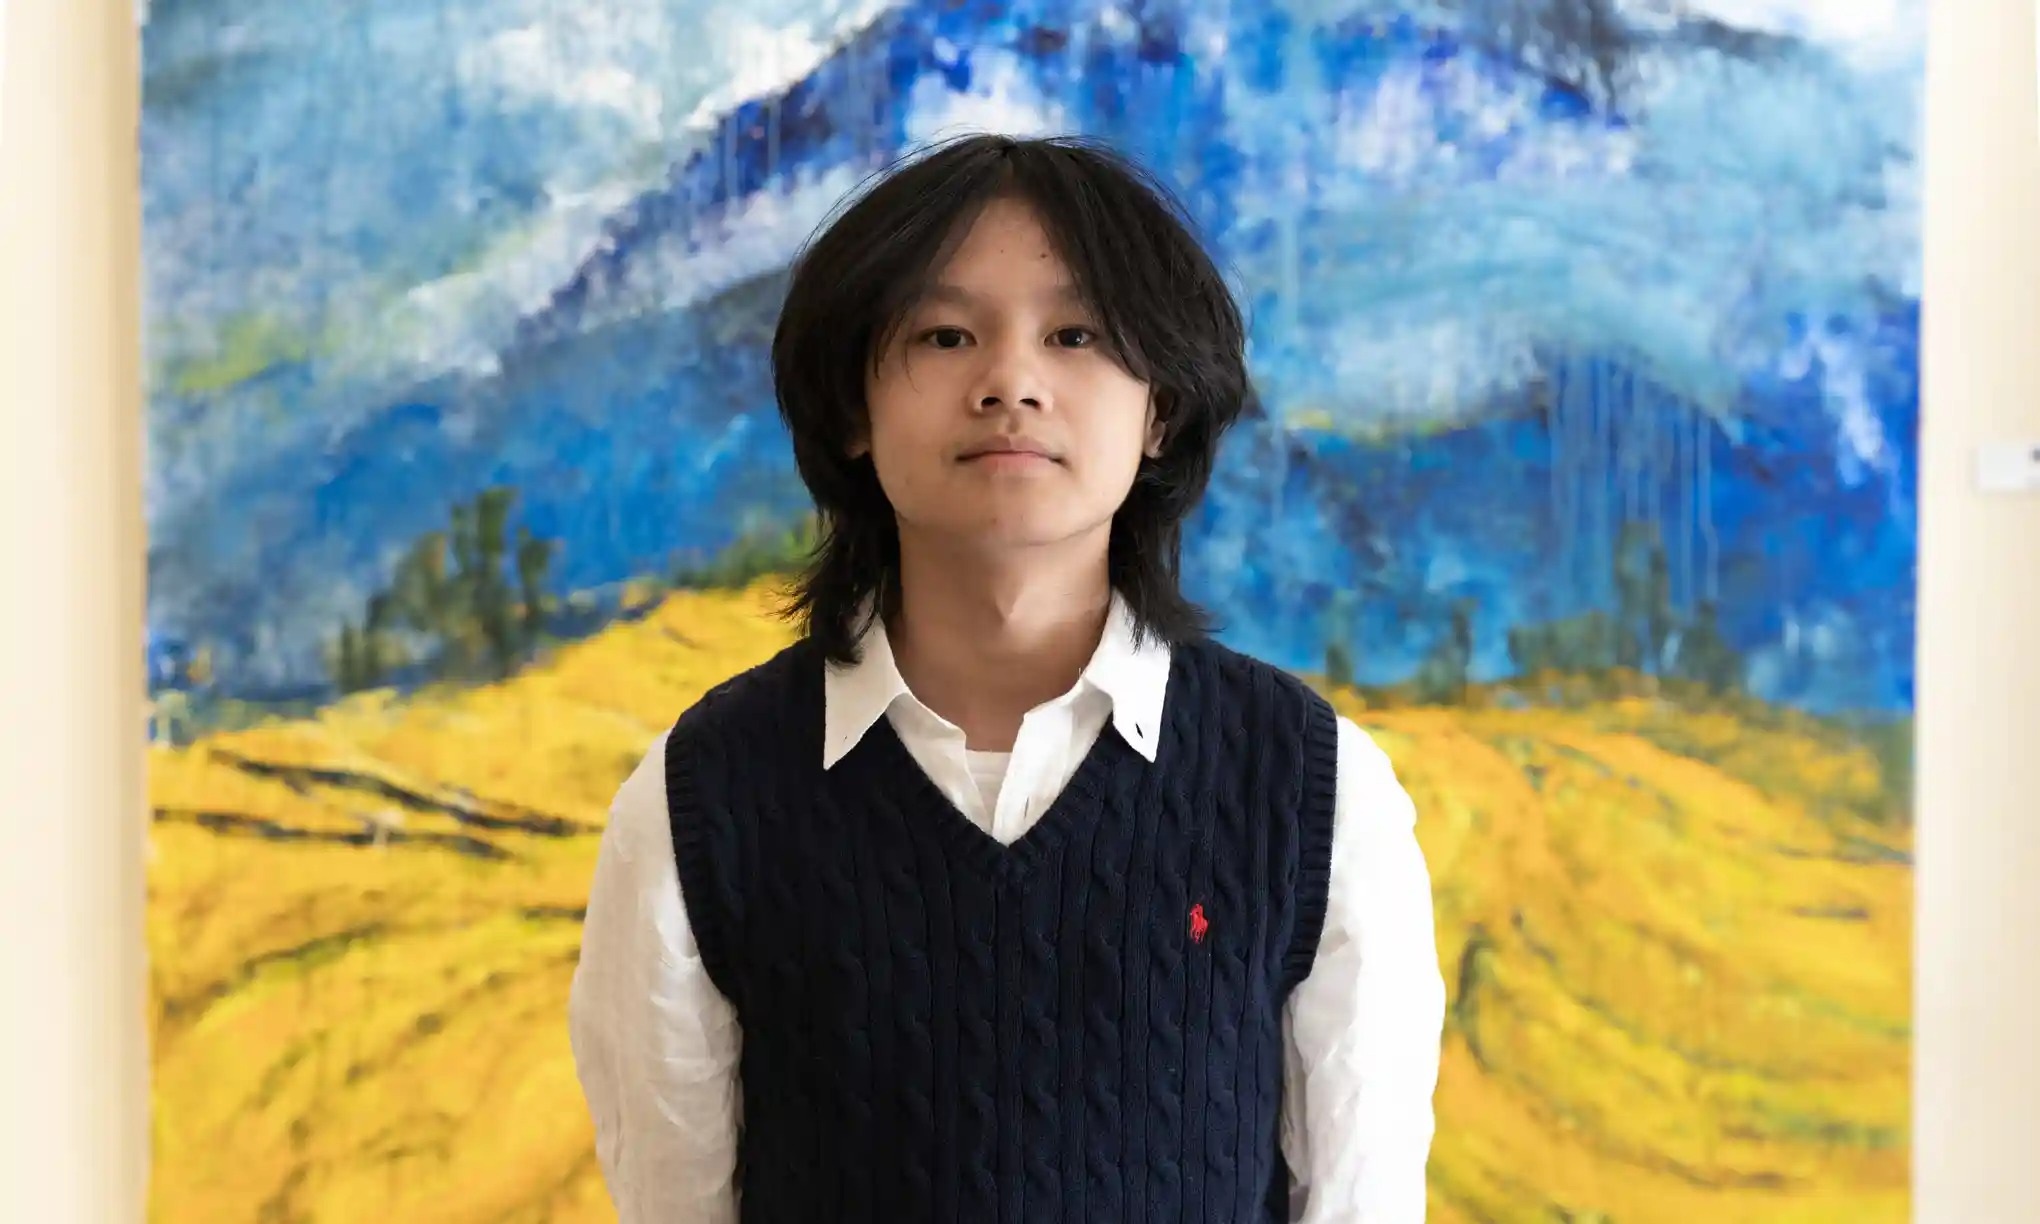 Báo Anh viết về thần đồng hội họa Việt: 14 tuổi, bán tranh vài tỷ đồng - 1